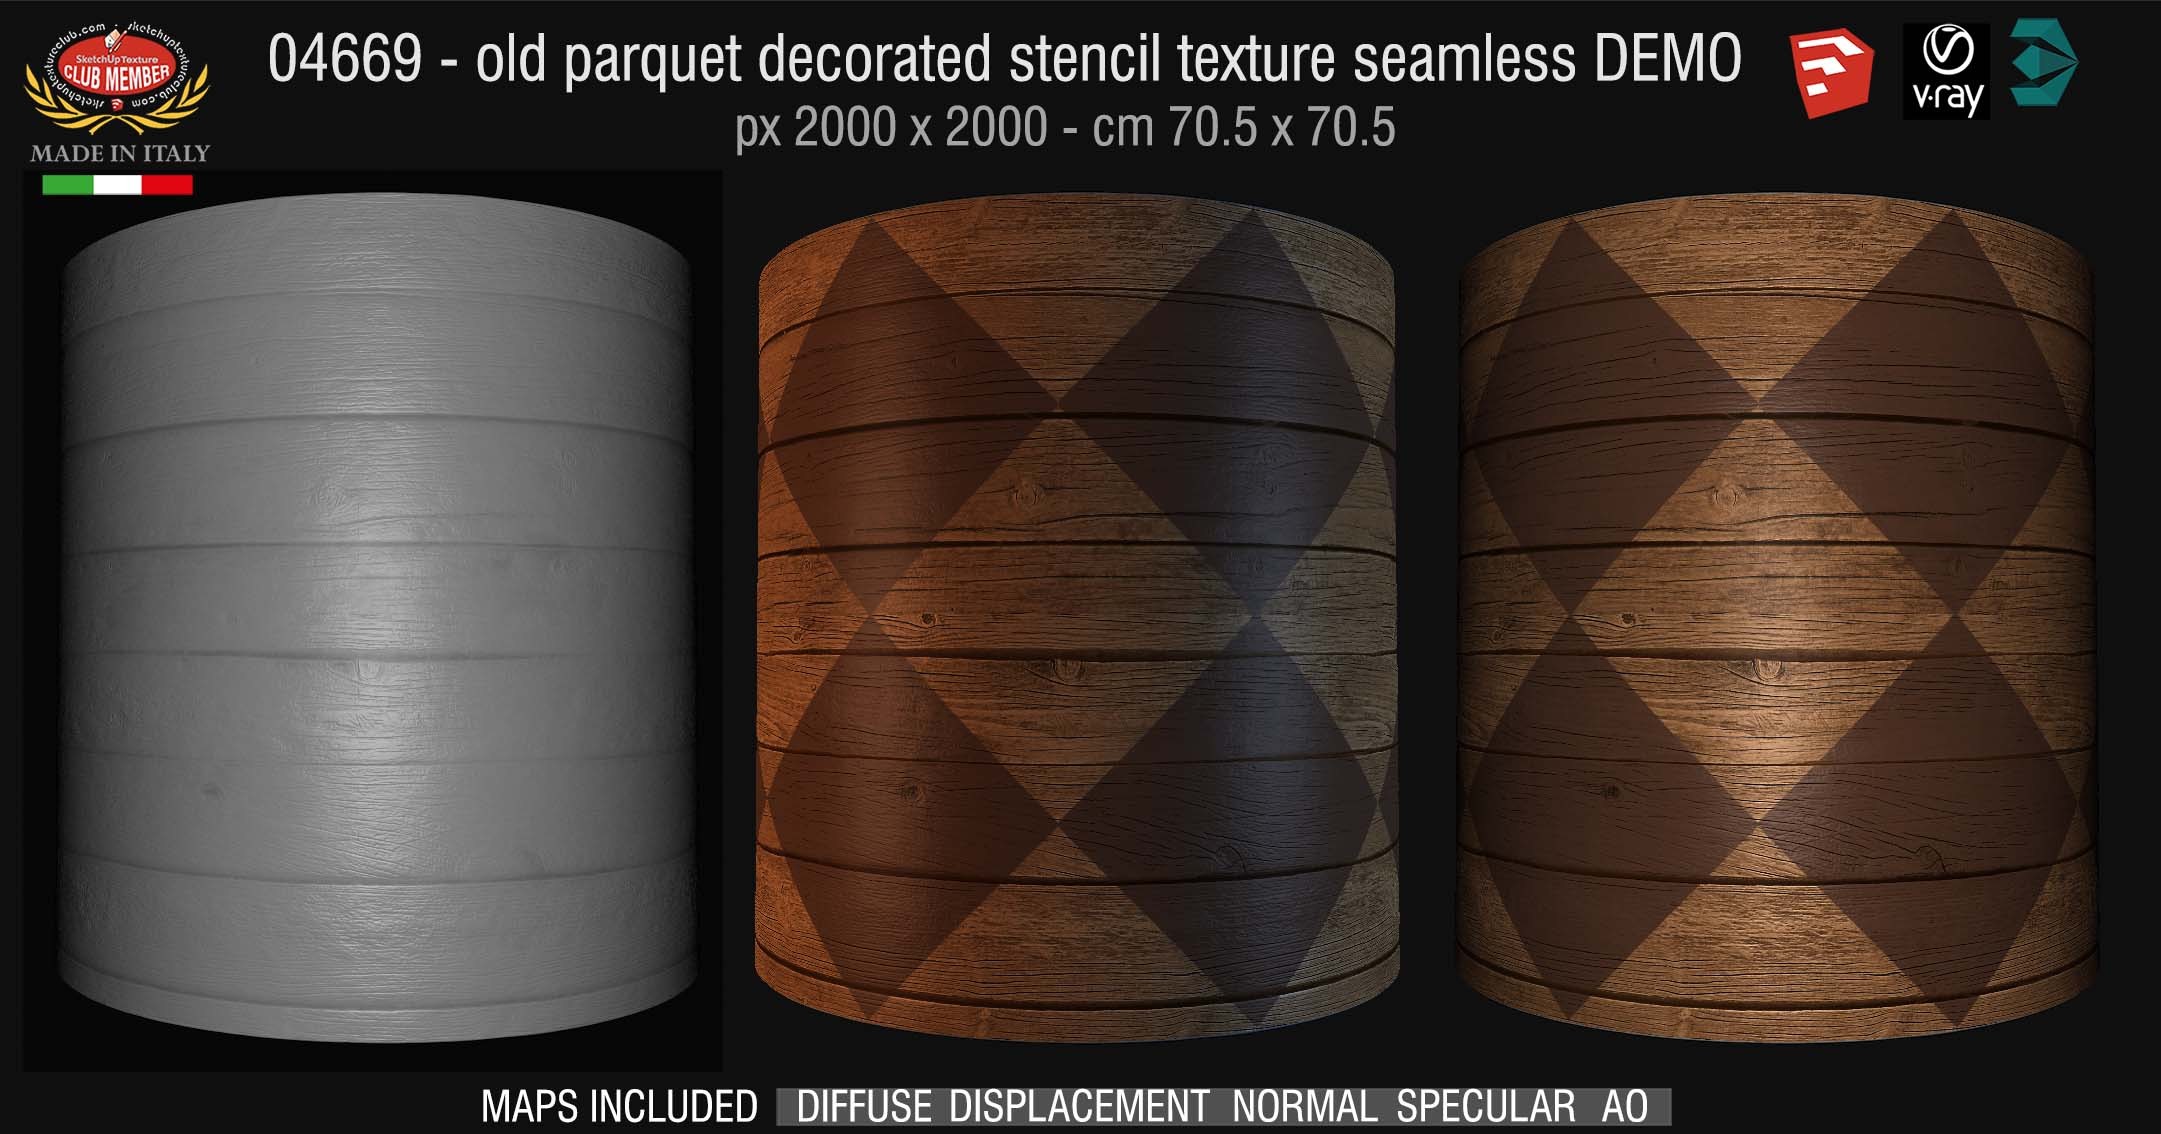 04669 HR Parquet decorated stencil texture seamless + maps DEMO